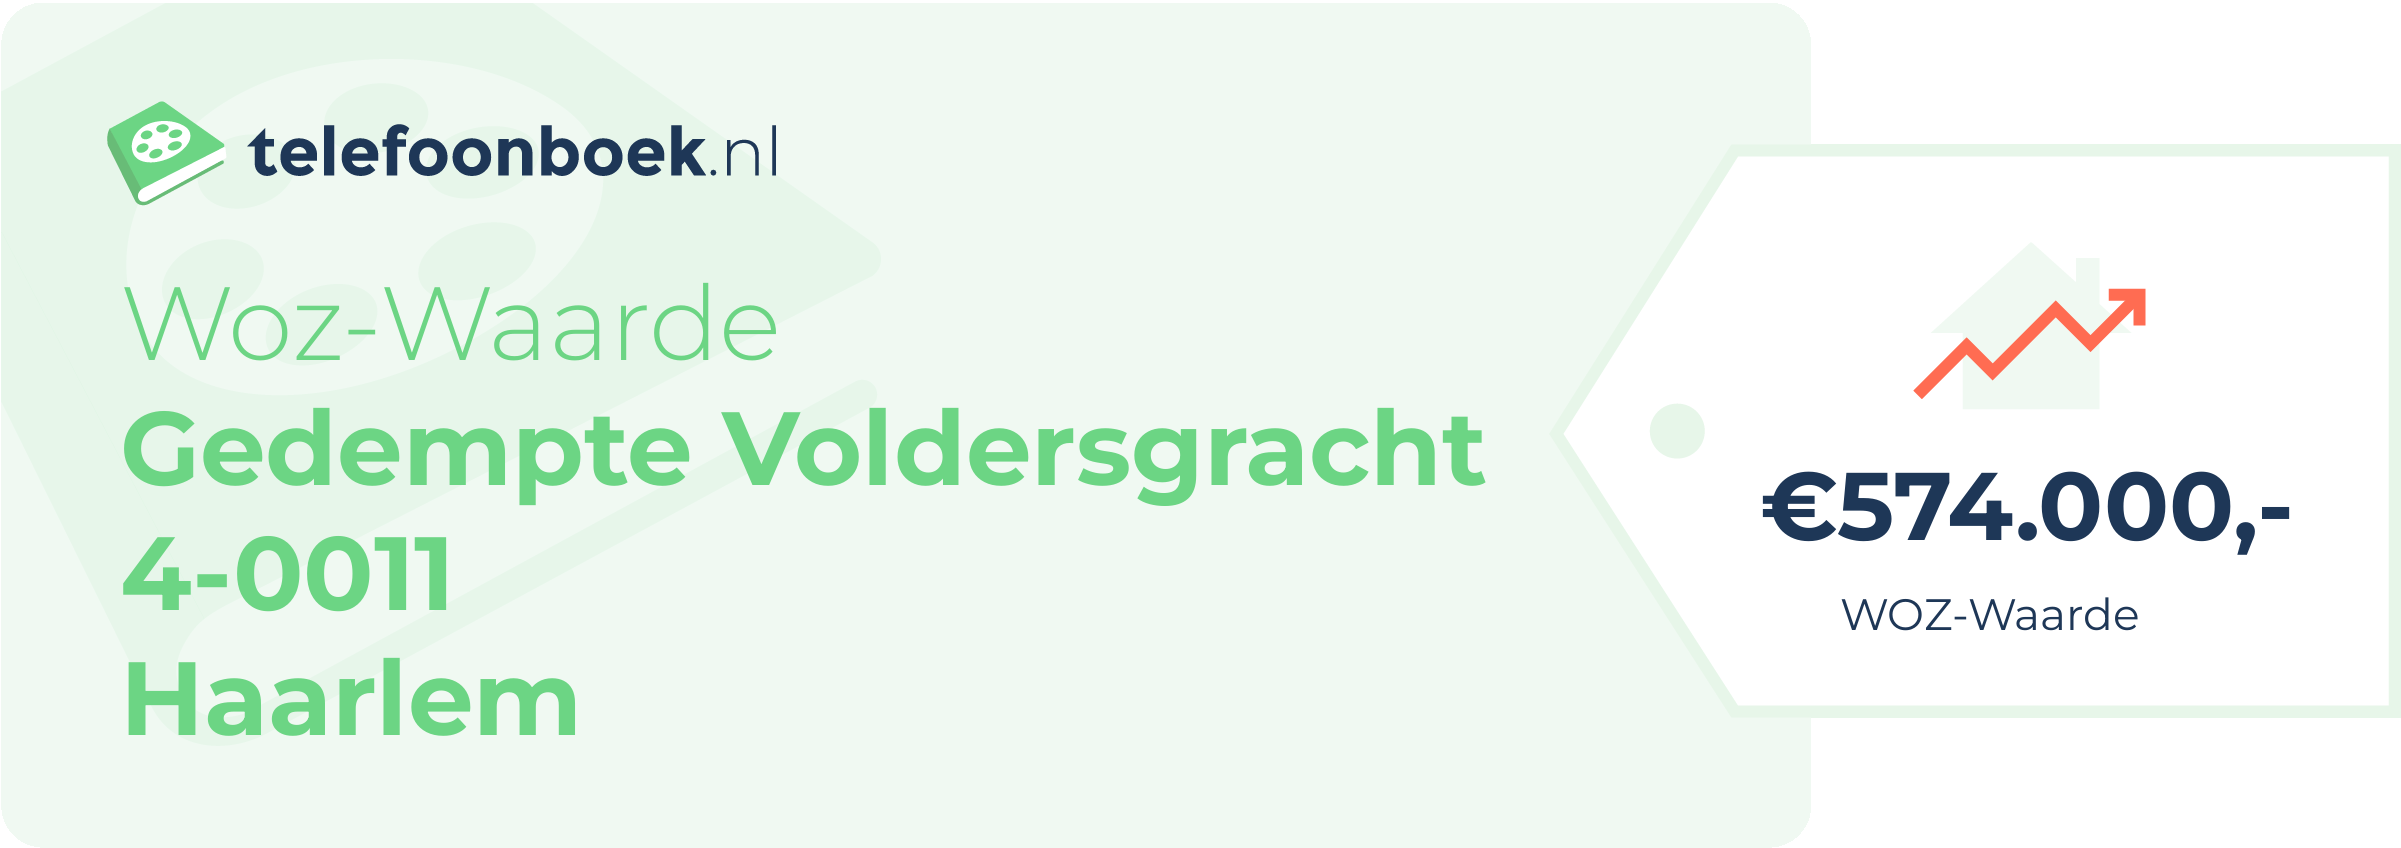 WOZ-waarde Gedempte Voldersgracht 4-0011 Haarlem